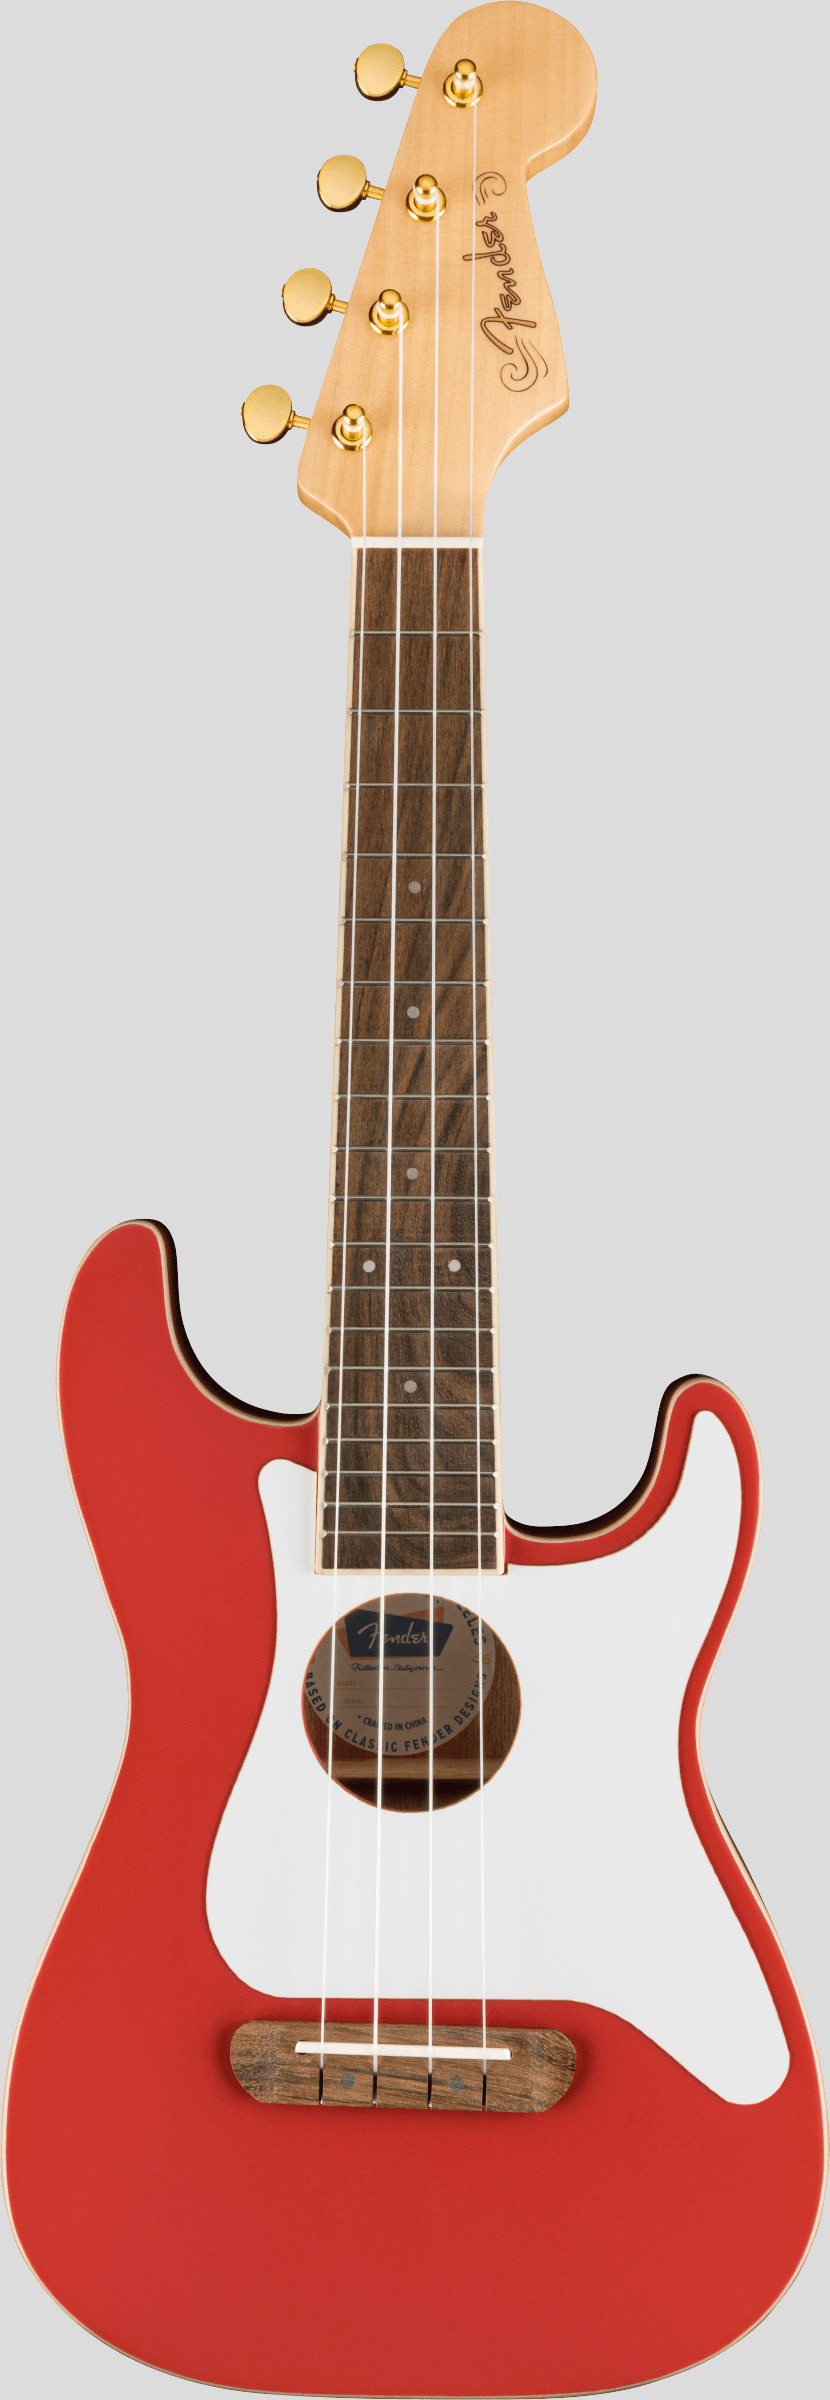 Fender Limited Edition Fullerton Stratocaster Concert Ukulele Fiesta Red 1